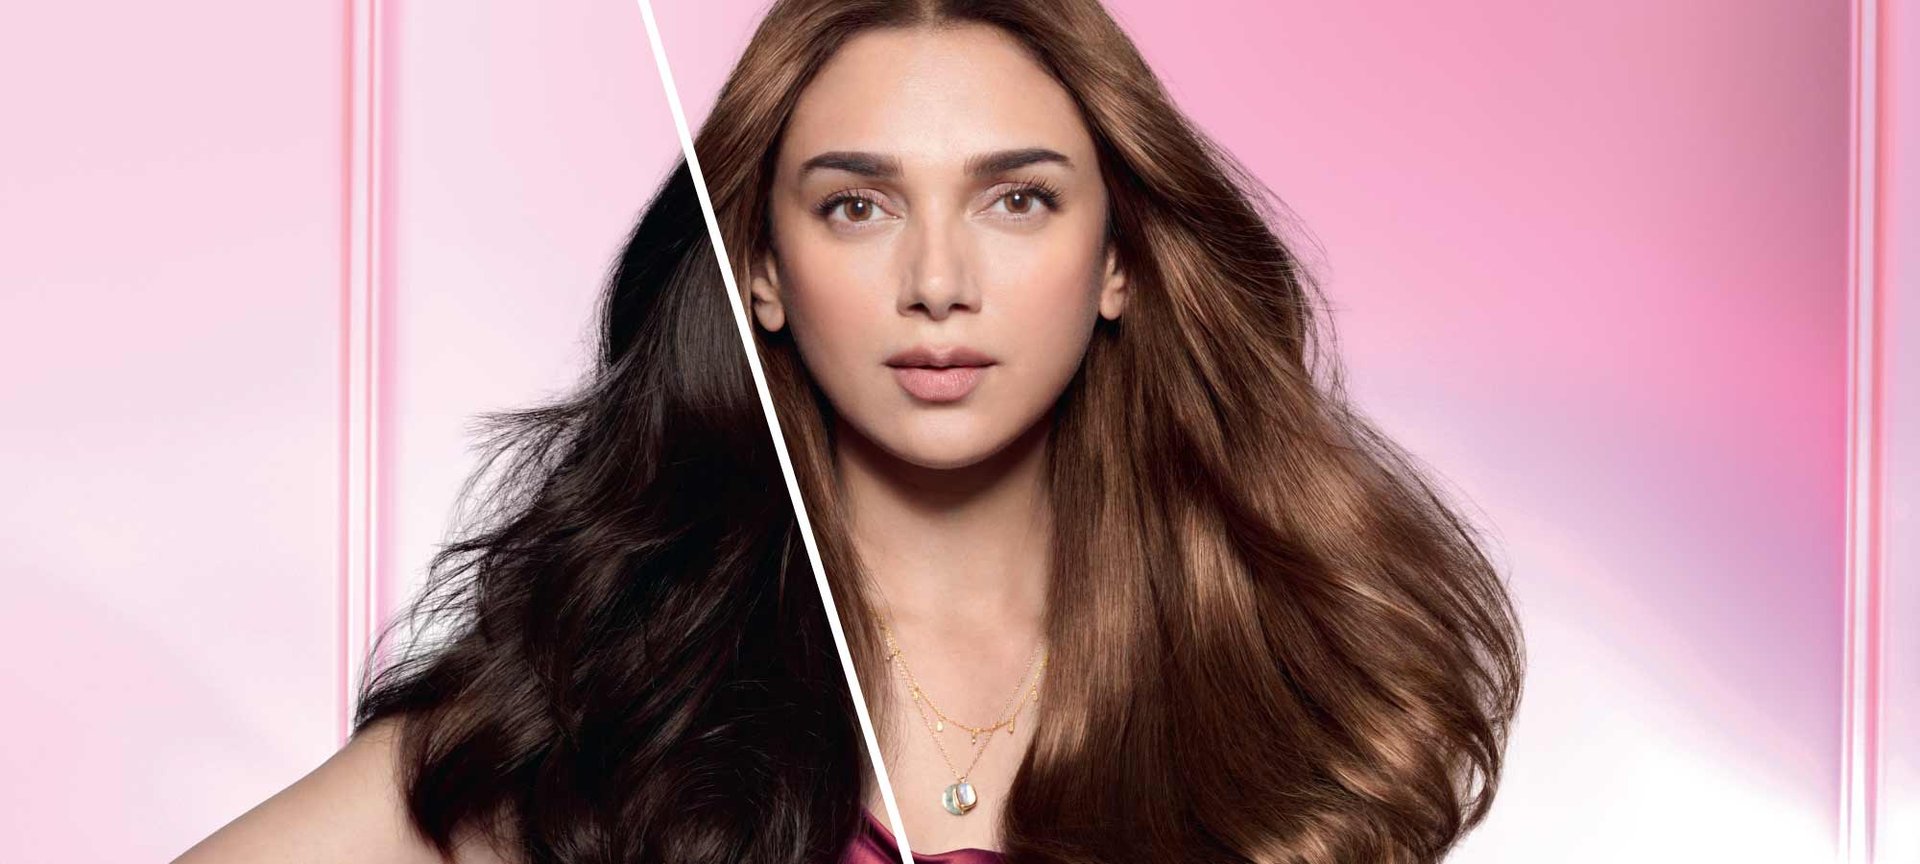 Virtual Try On - Try Virtual Hair Color & Makeup | L'Oréal Paris